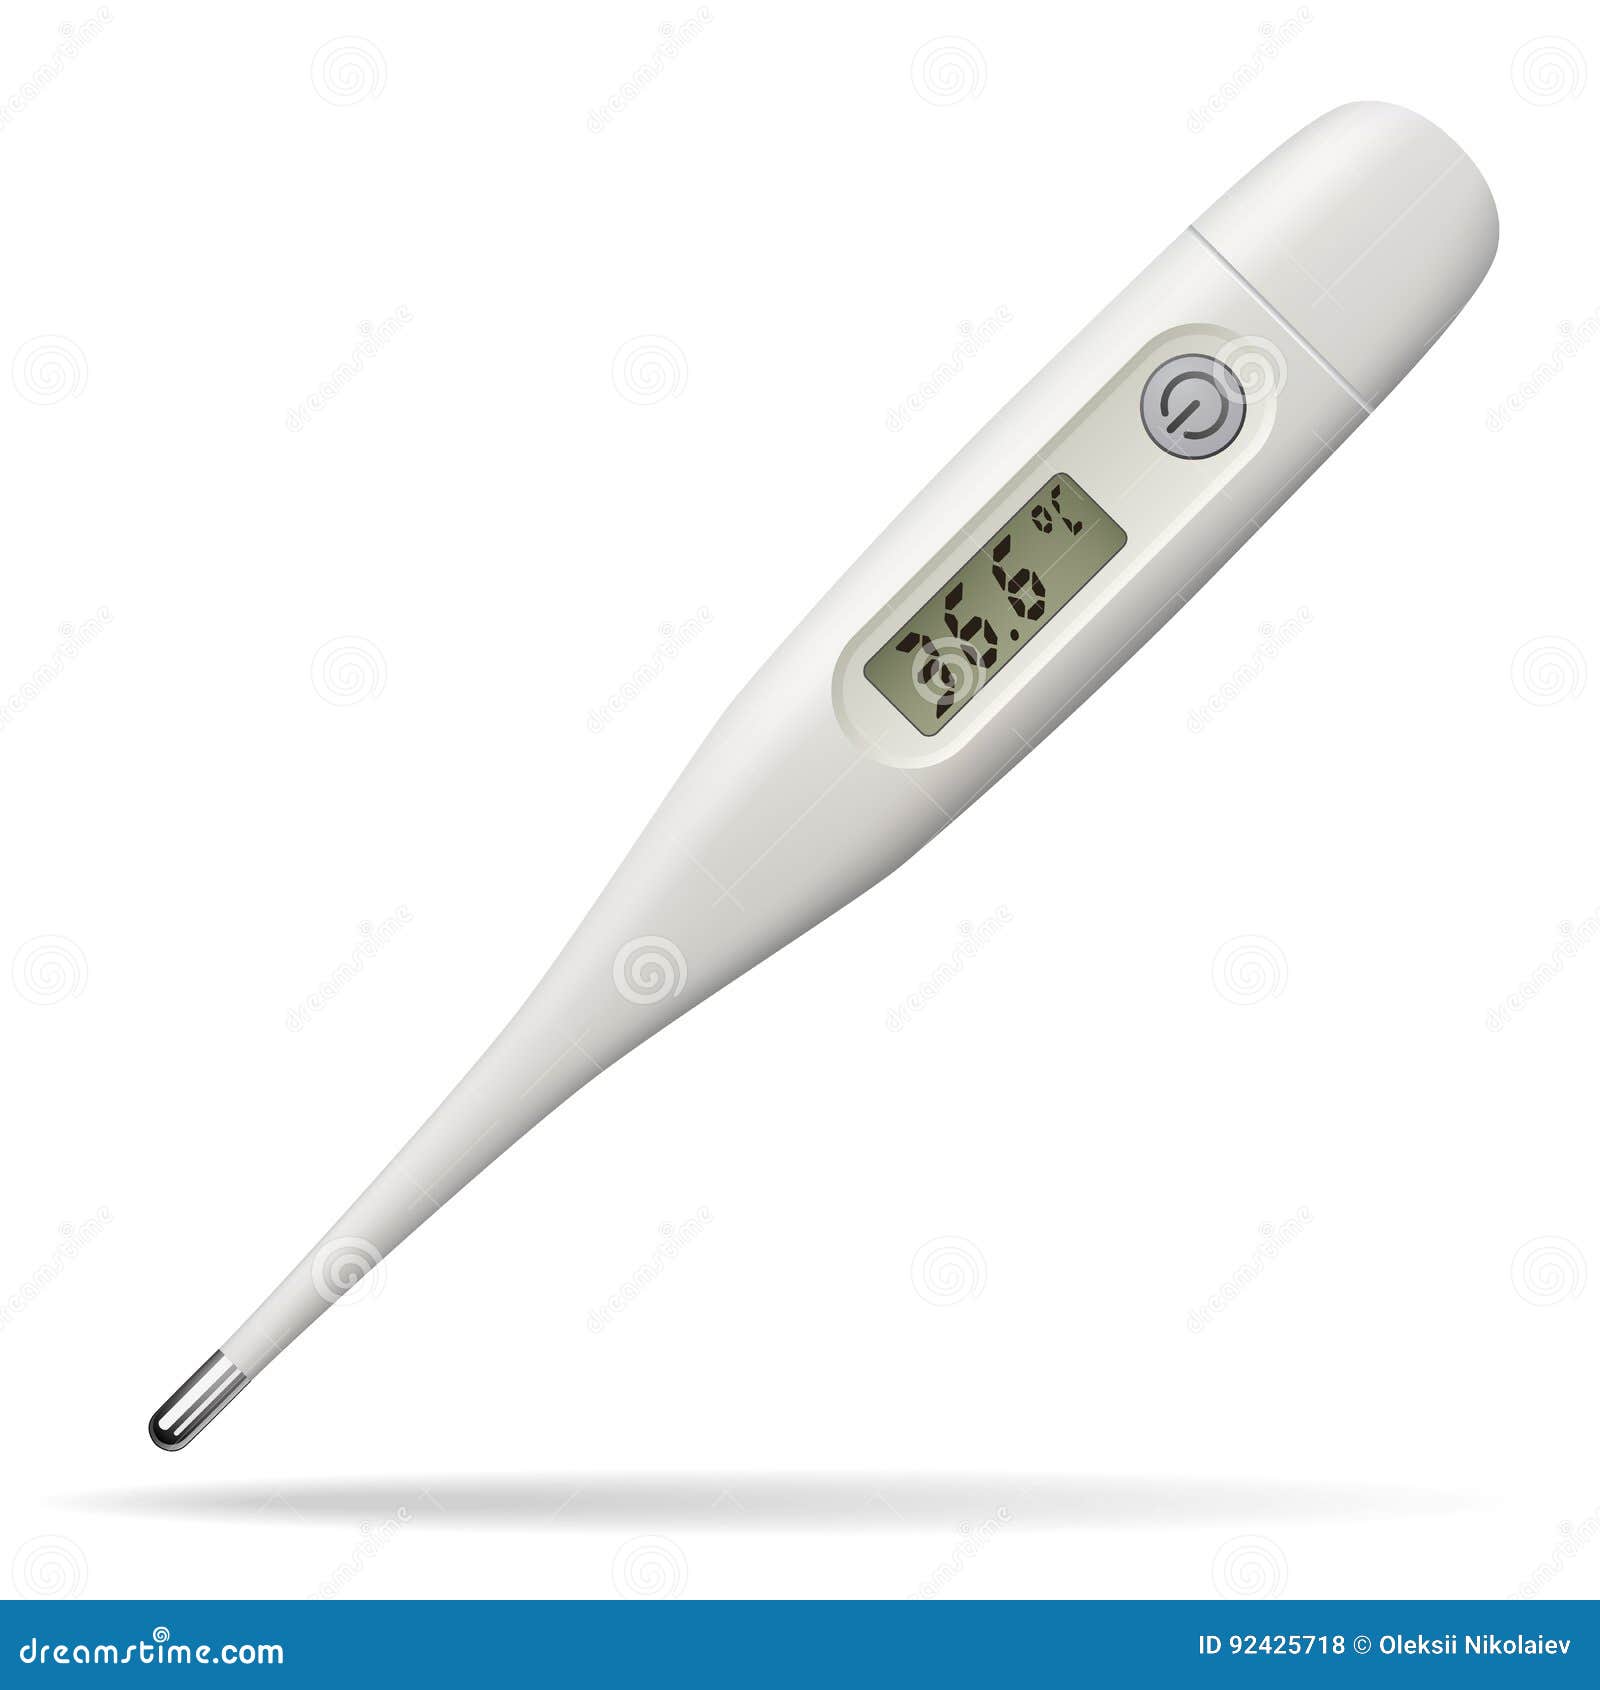 Corps Digital LCD chauffage Thermomètre Température Appareil de mesure Bébé Premier Secours PW 